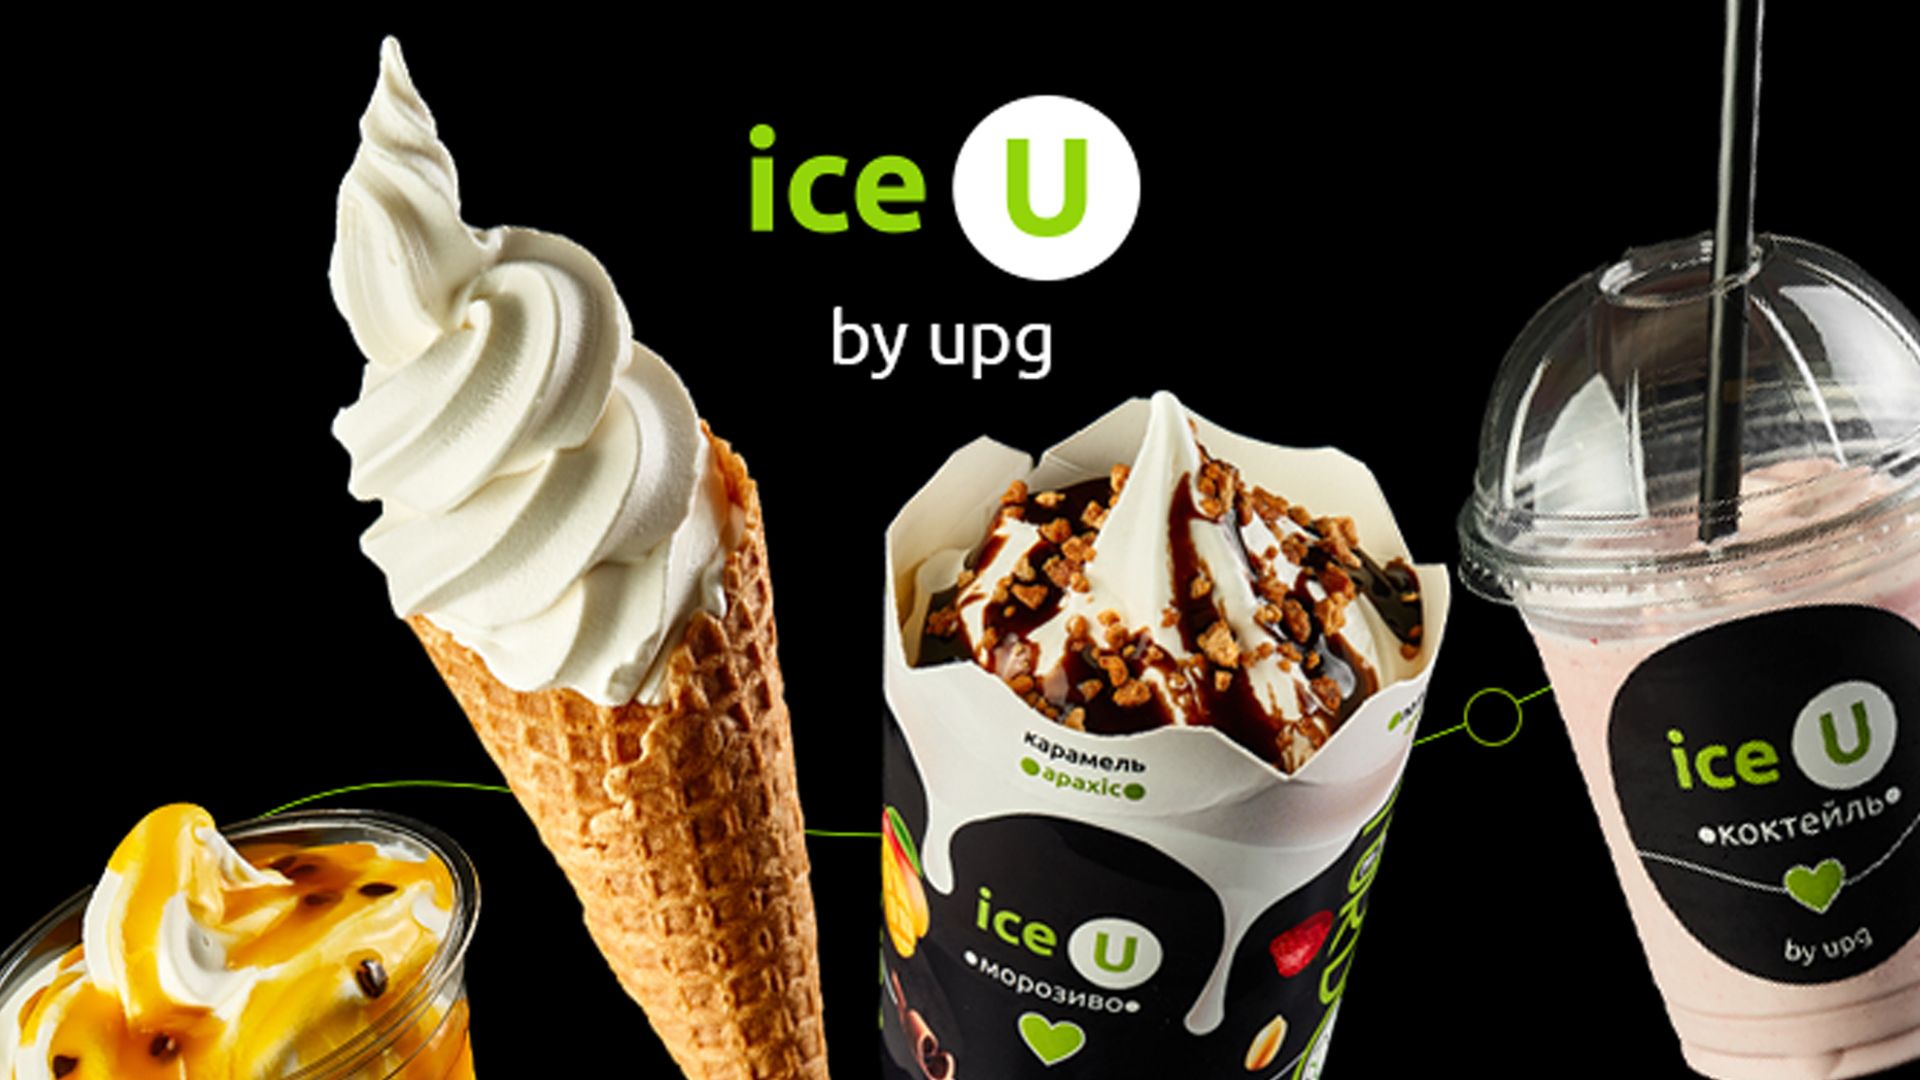 Мережа АЗК UPG та "Люкс ФМ" запустили найсмачніший розіграш літа з призом – морозивом ice U